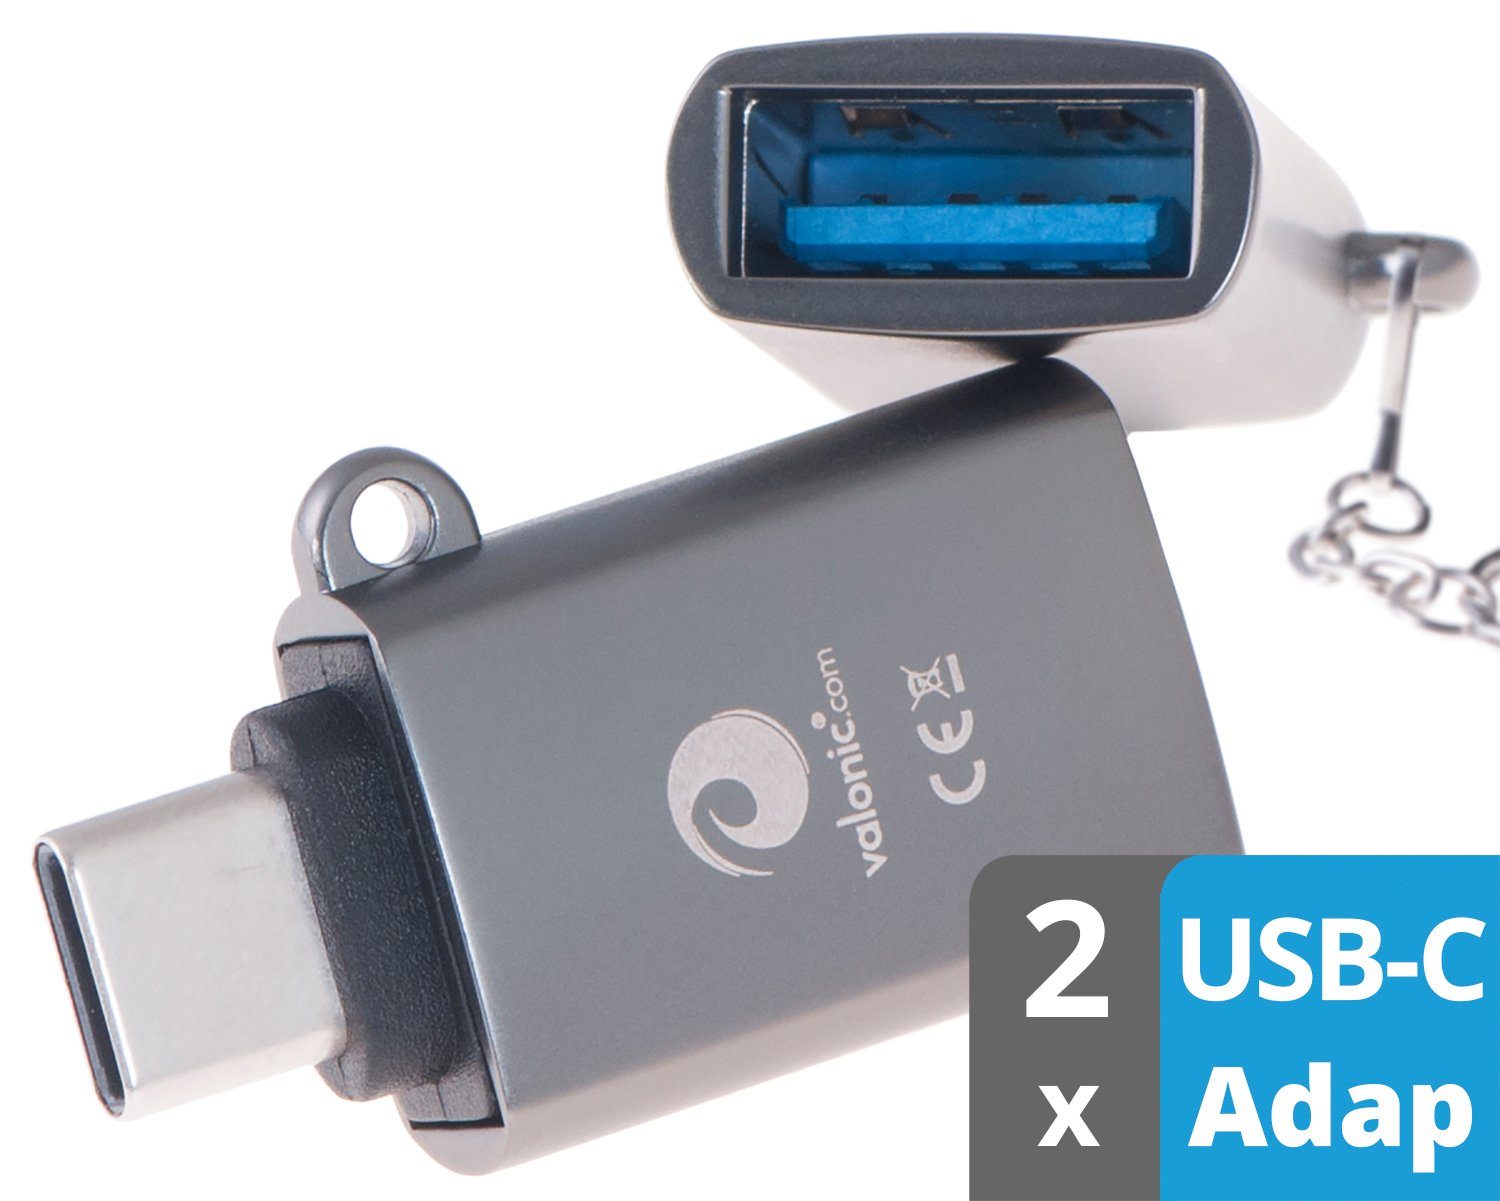 valonic »USB-C zu USB-A (USB 3.0), OTG, Schlüsselanhänger« USB-Adapter USB  Typ C zu USB Typ A, stabile Öse aus Metall und Schlüsselanhänger -  kompatibel mit Apple MacBook, Externe Festplatte, USB-Stick online kaufen